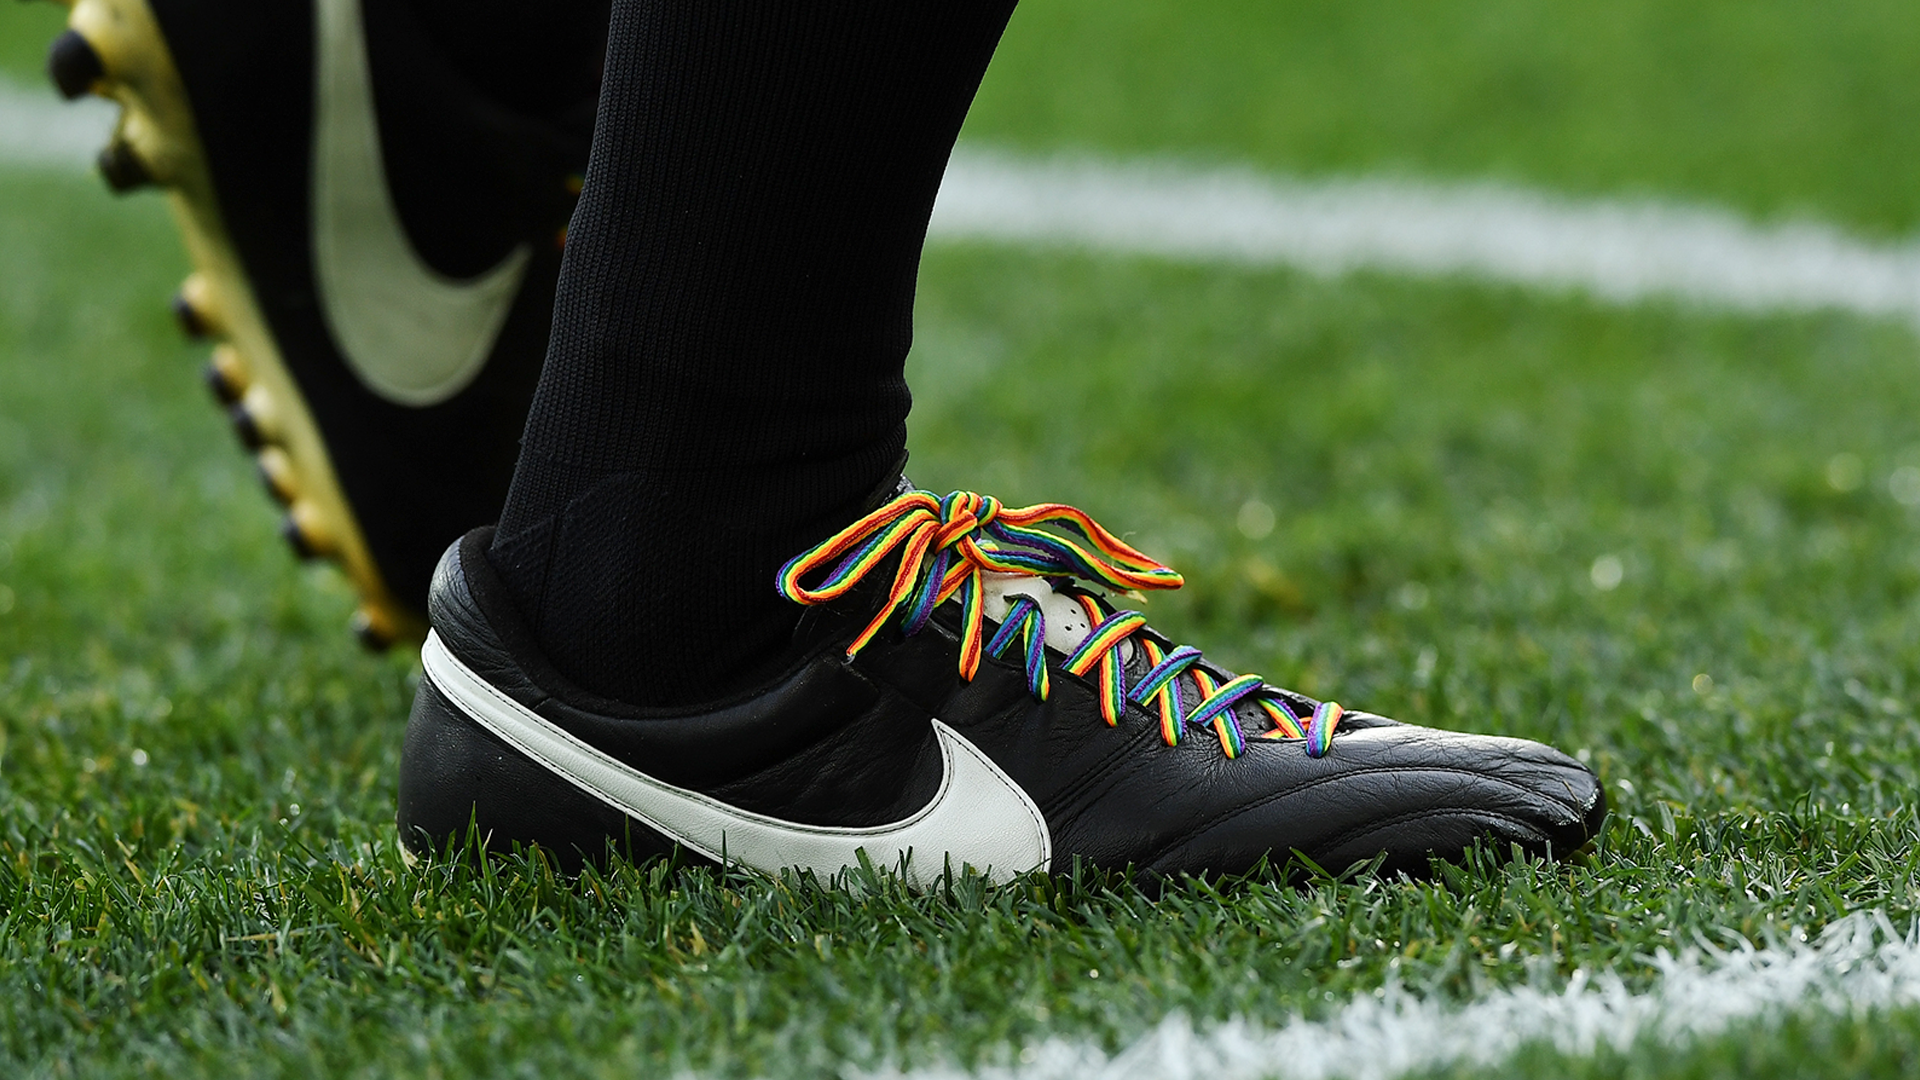 Rainbow laces Premier League